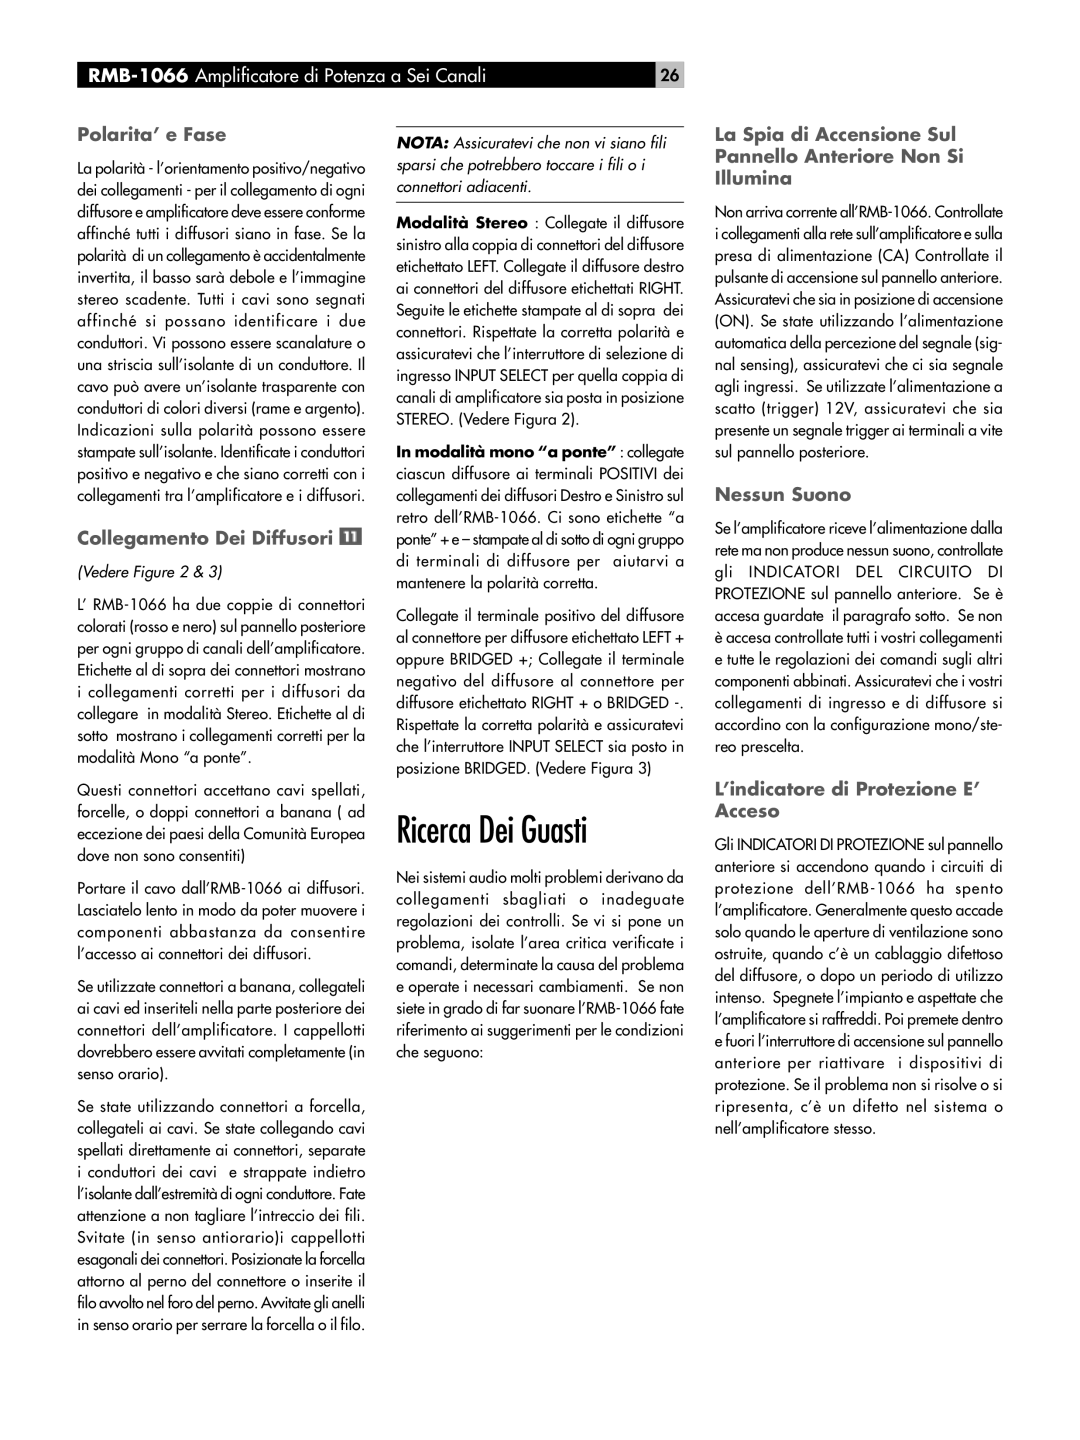 Rotel RB-1066 owner manual Ricerca Dei Guasti, Polarita’ e Fase, Collegamento Dei Diffusori, Nessun Suono, Vedere Figure 